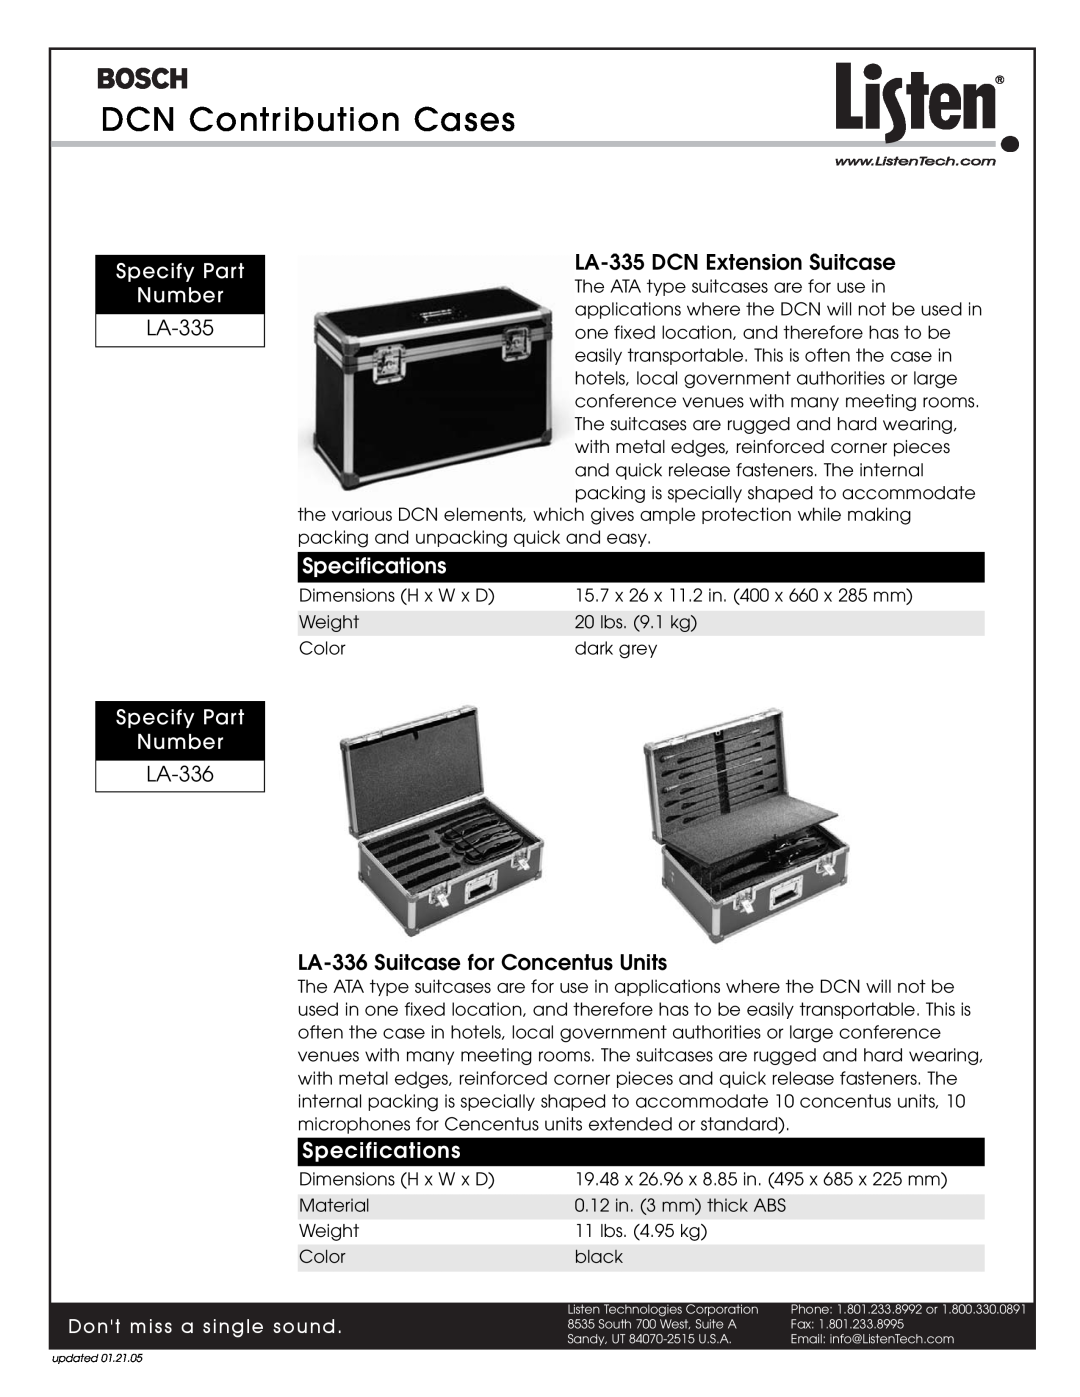 Listen Technologies LBB 3508, LBB 3504 DCN Contribution Cases, LA-335 DCN Extension Suitcase, Dont miss a single sound 